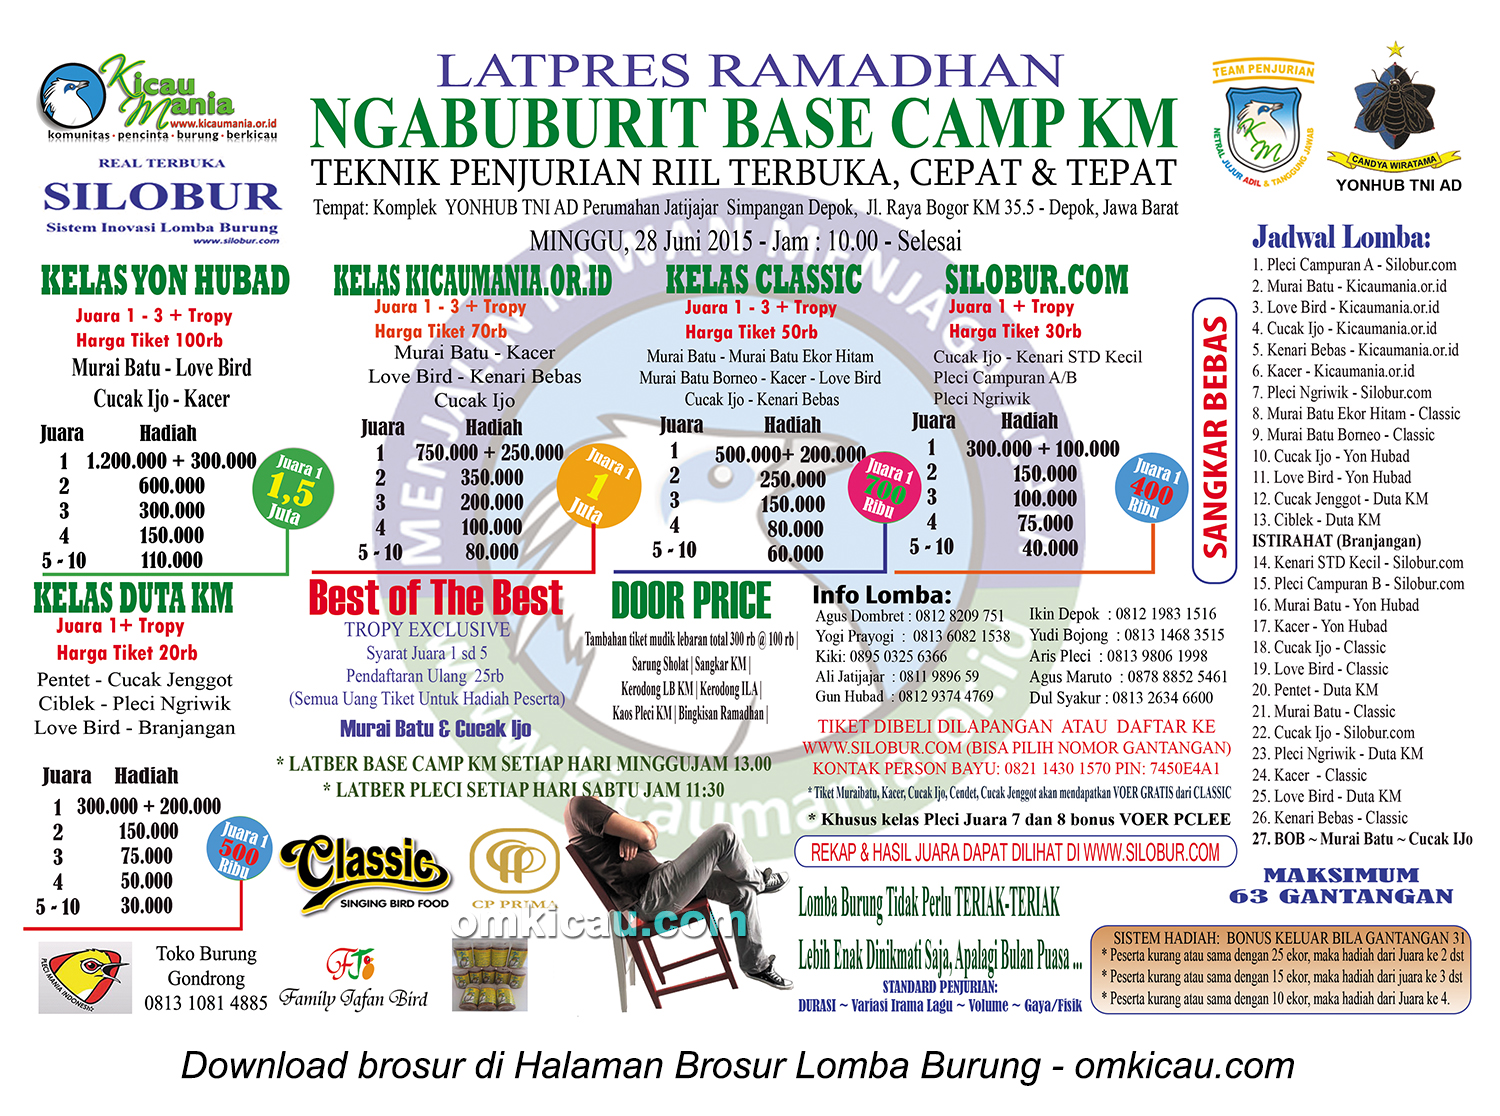 Brosur Latpres Ramadhan Ngabuburit Base Camp KM, Depok, 28 Juni 2015